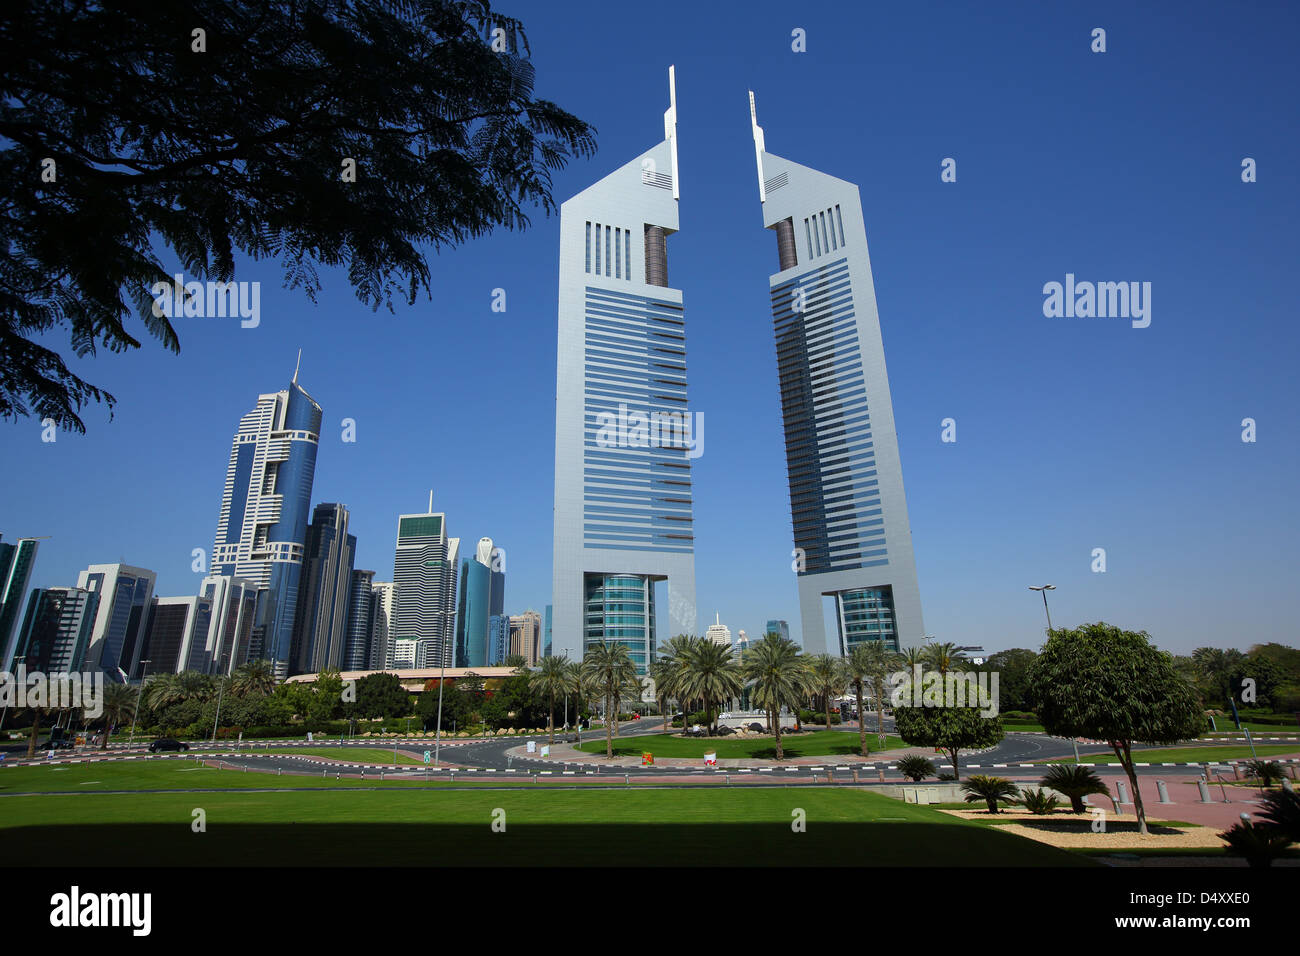 Emirates towers, Dubai, United Arab Emirates Stock Photo